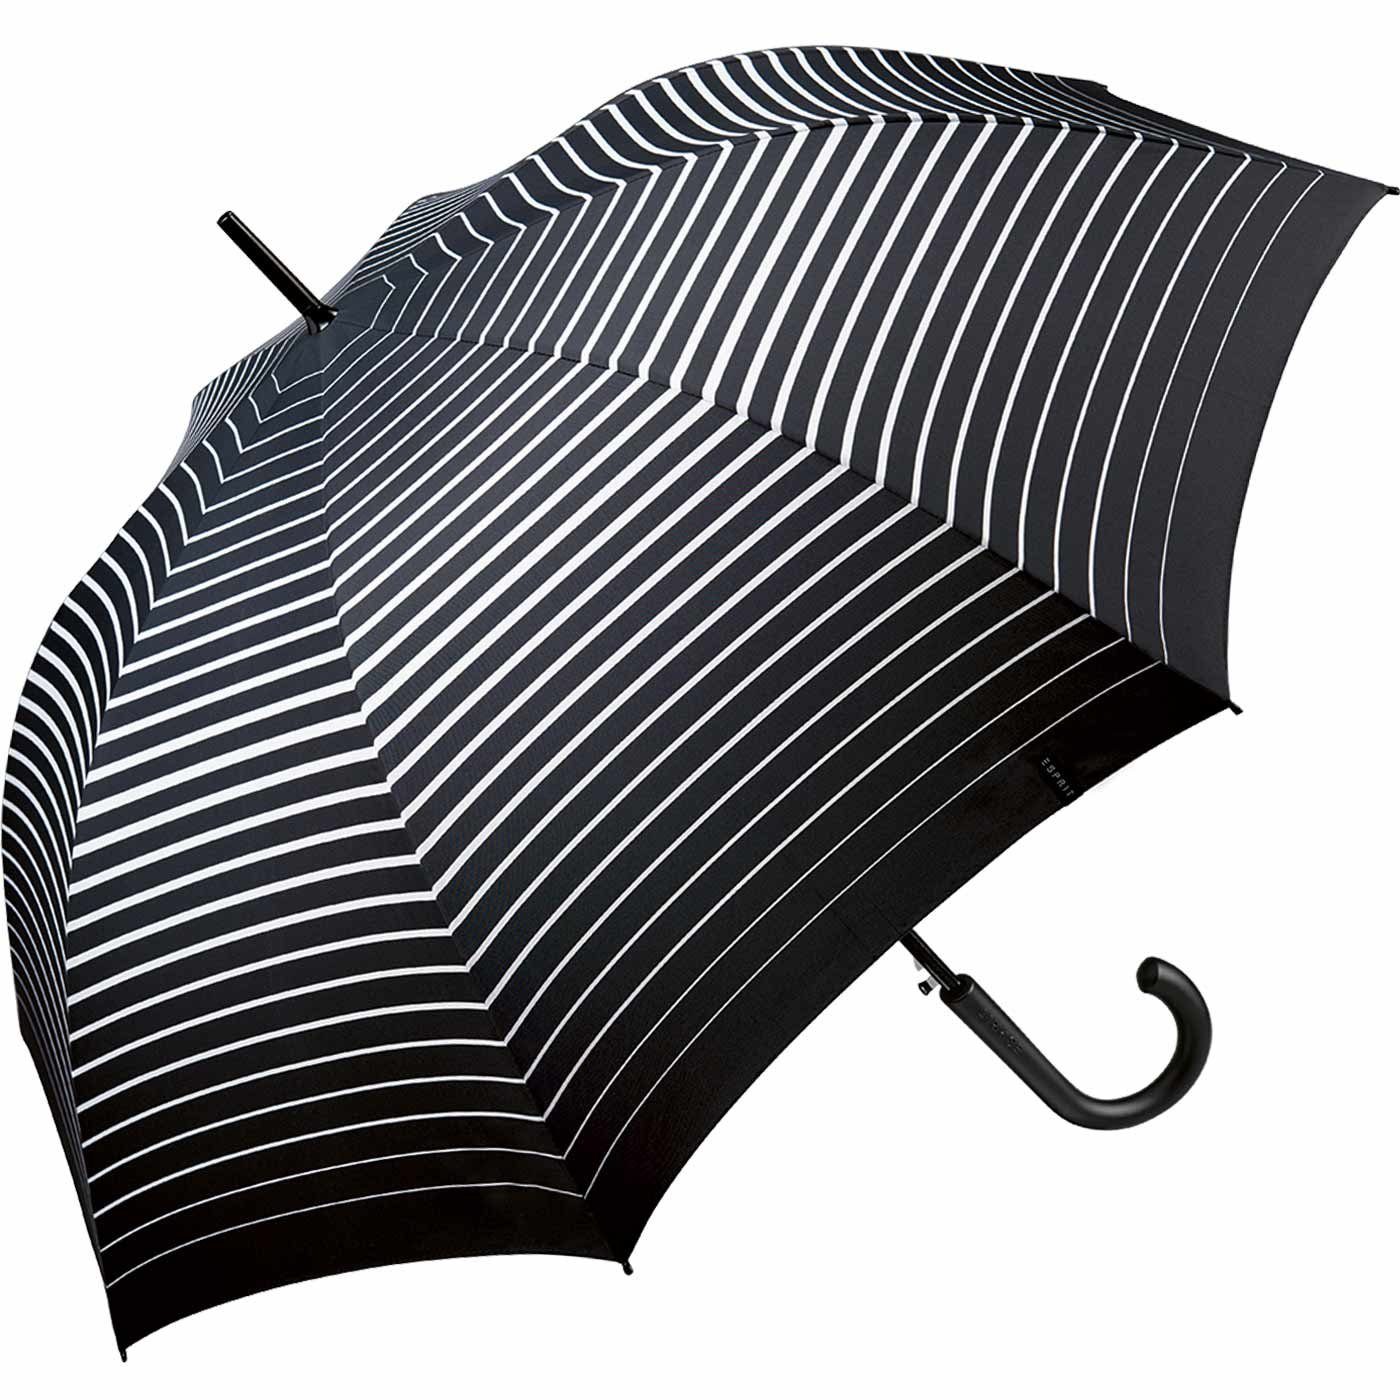 Esprit Langregenschirm Damen in Degradee black, moderner - schwarz-weiß Auf-Automatik mit Stripe Streifen-Optik groß, stabil, 